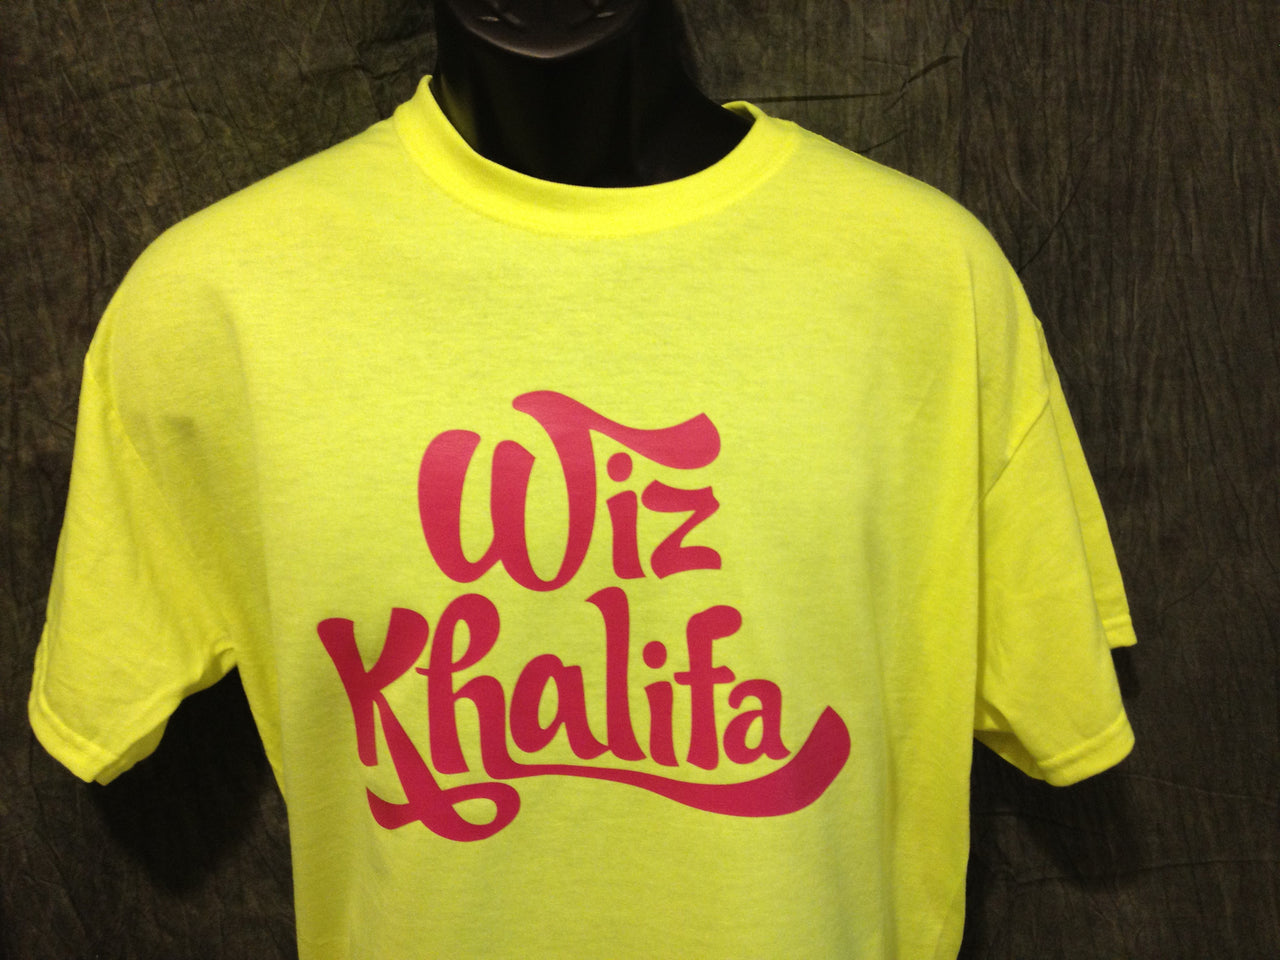 "Wiz Khalifa" Tshirt - TshirtNow.net - 8